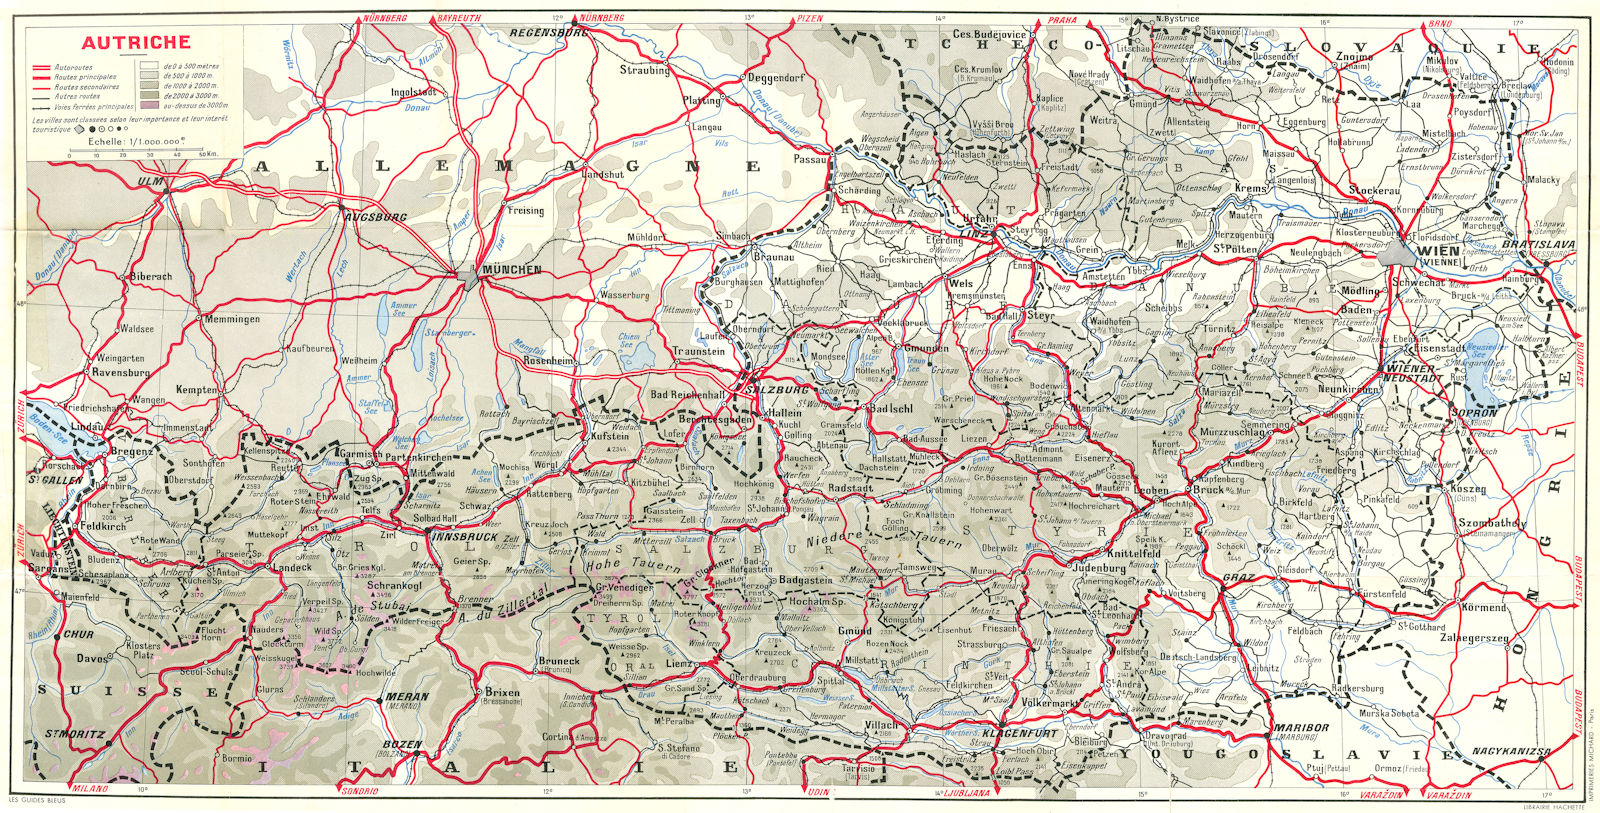 AUSTRIA. Autriche 1954 old vintage map plan chart